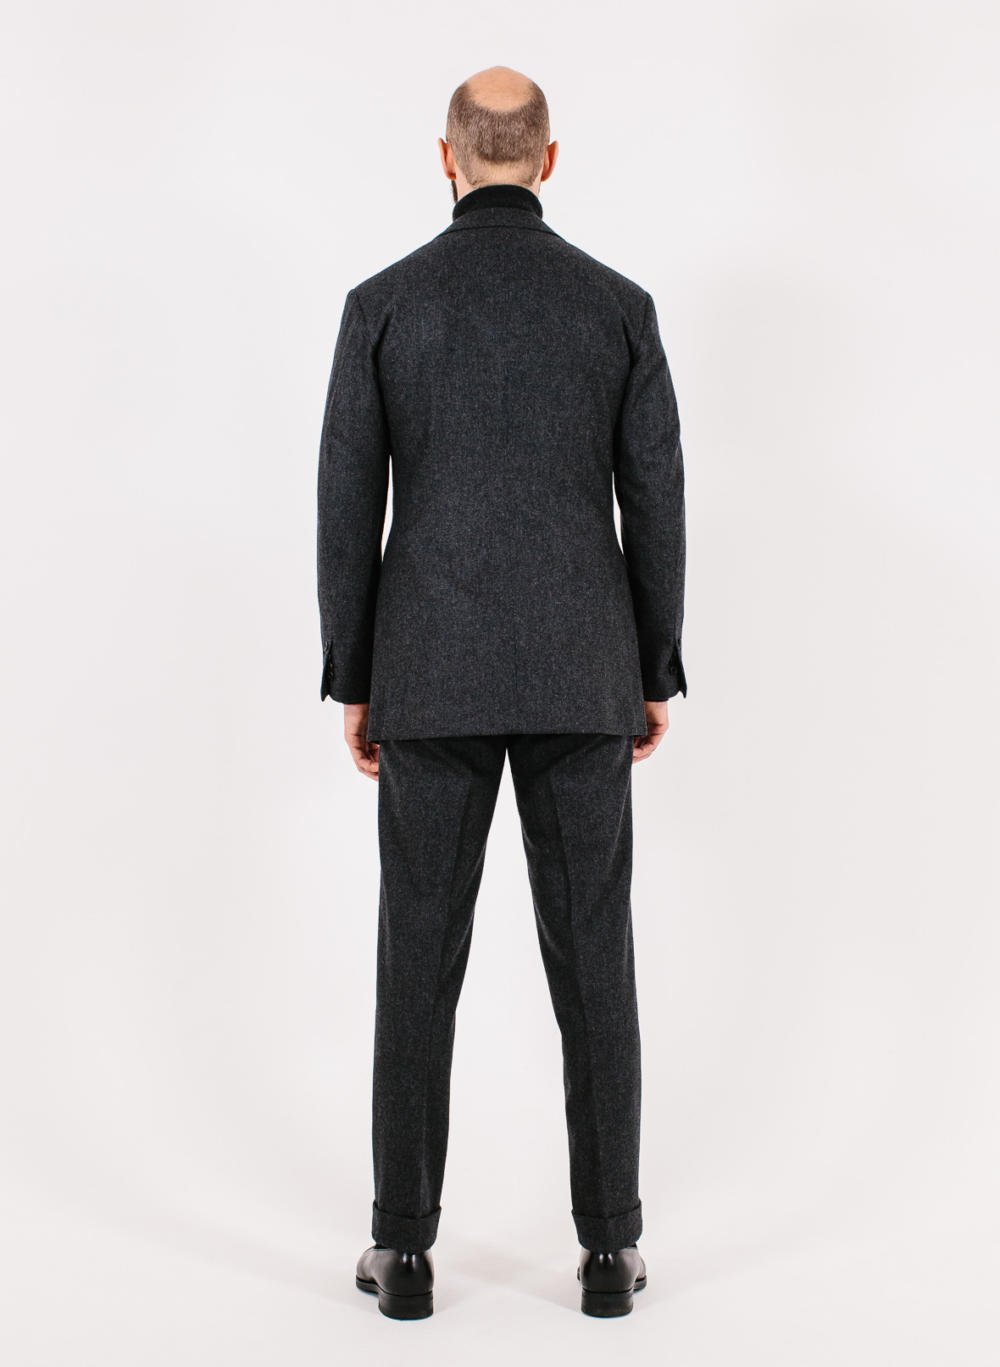 Vestrucci charcoal suit: Style Breakdown – Permanent Style